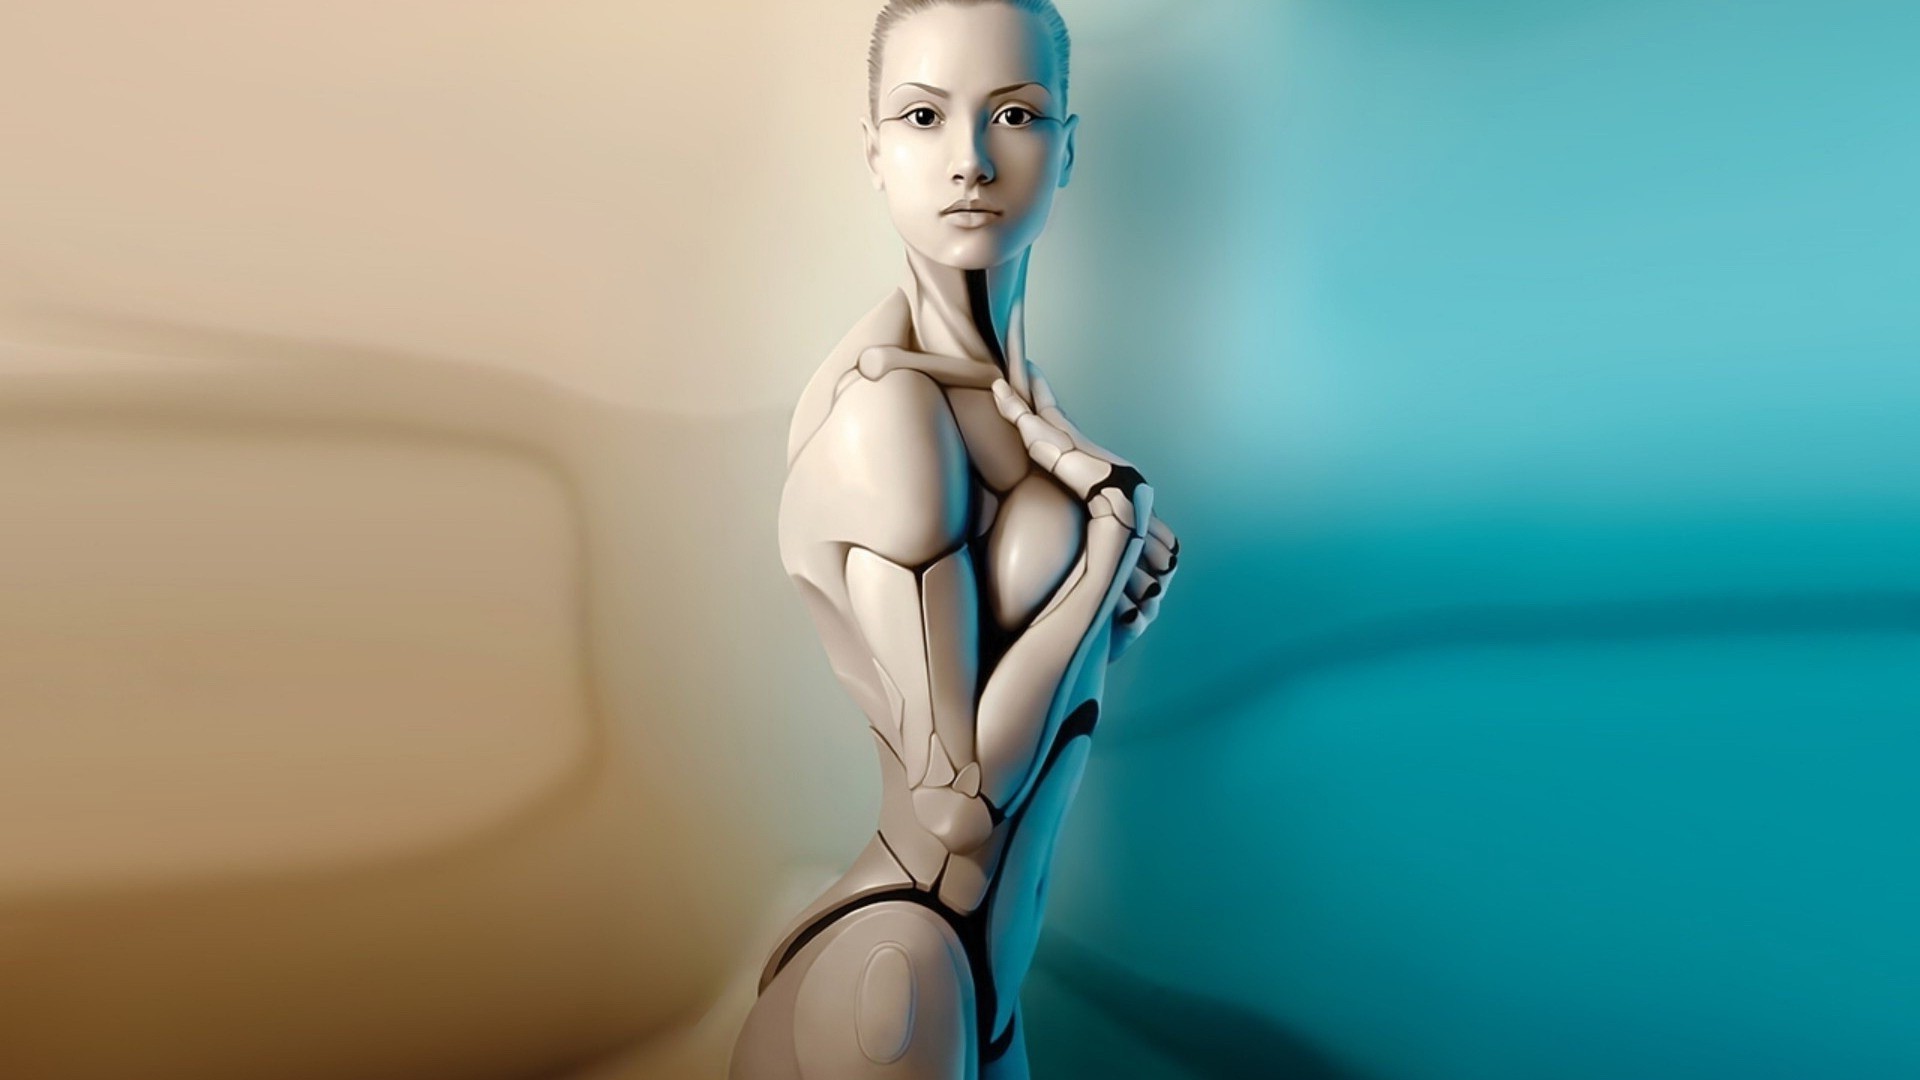 Robot Women Artwork Gynoid Digital Art 1920x1080